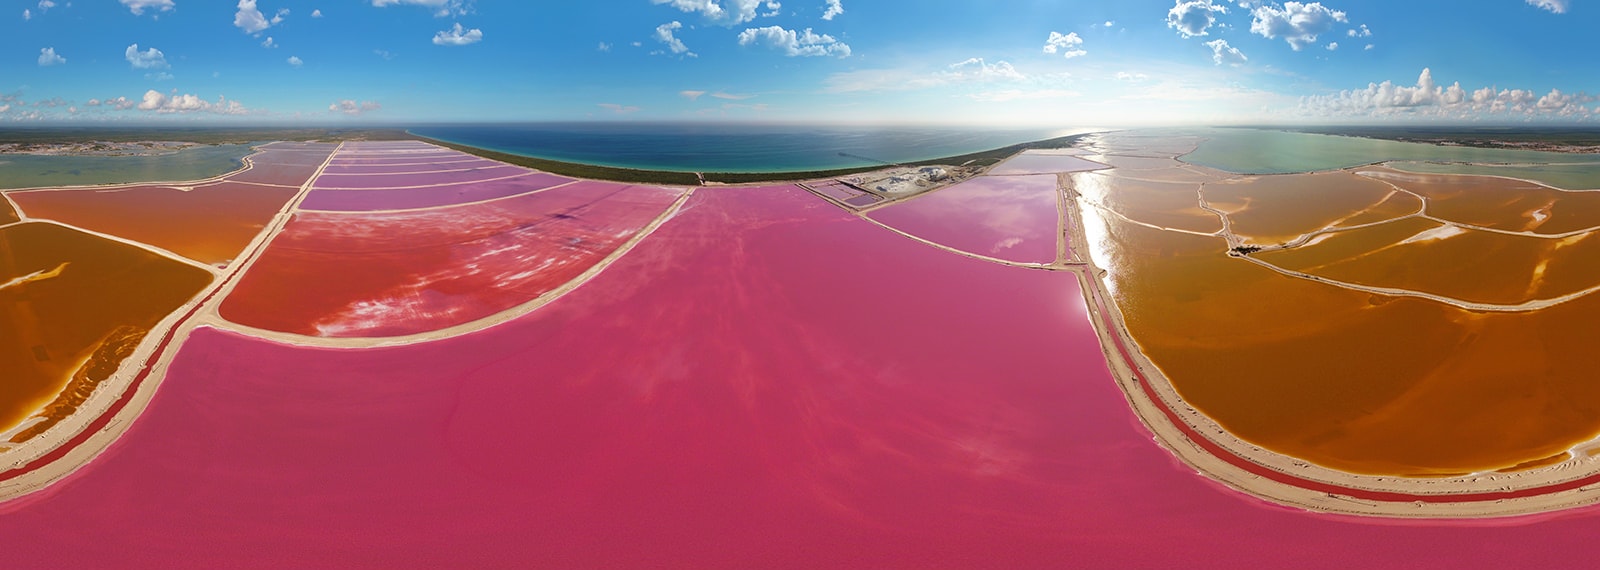 Las-coloradas-Pink-Lake-Mexico-maltm-05